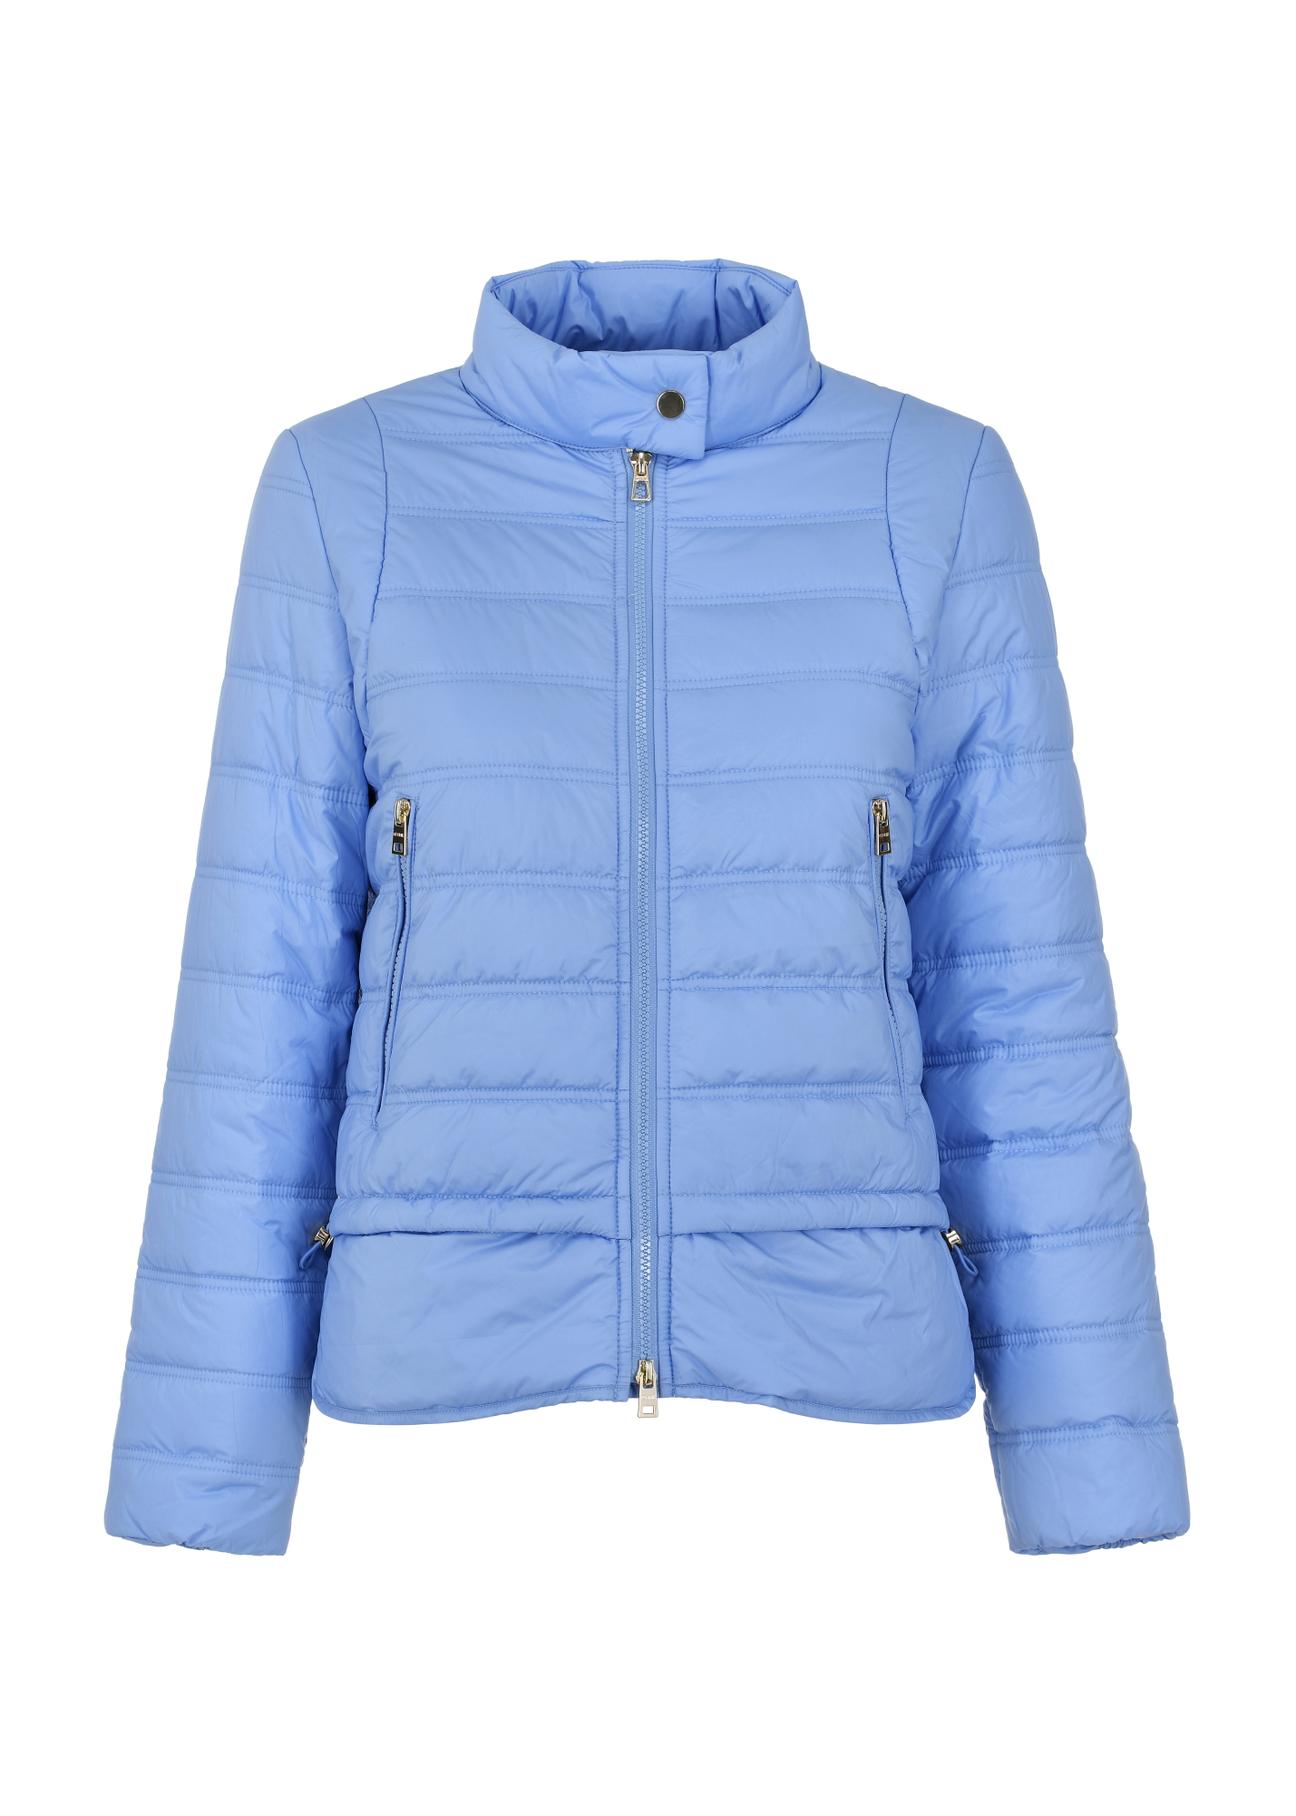 Błękitna kurtka pikowana damska KURDT-0500-61(W24)